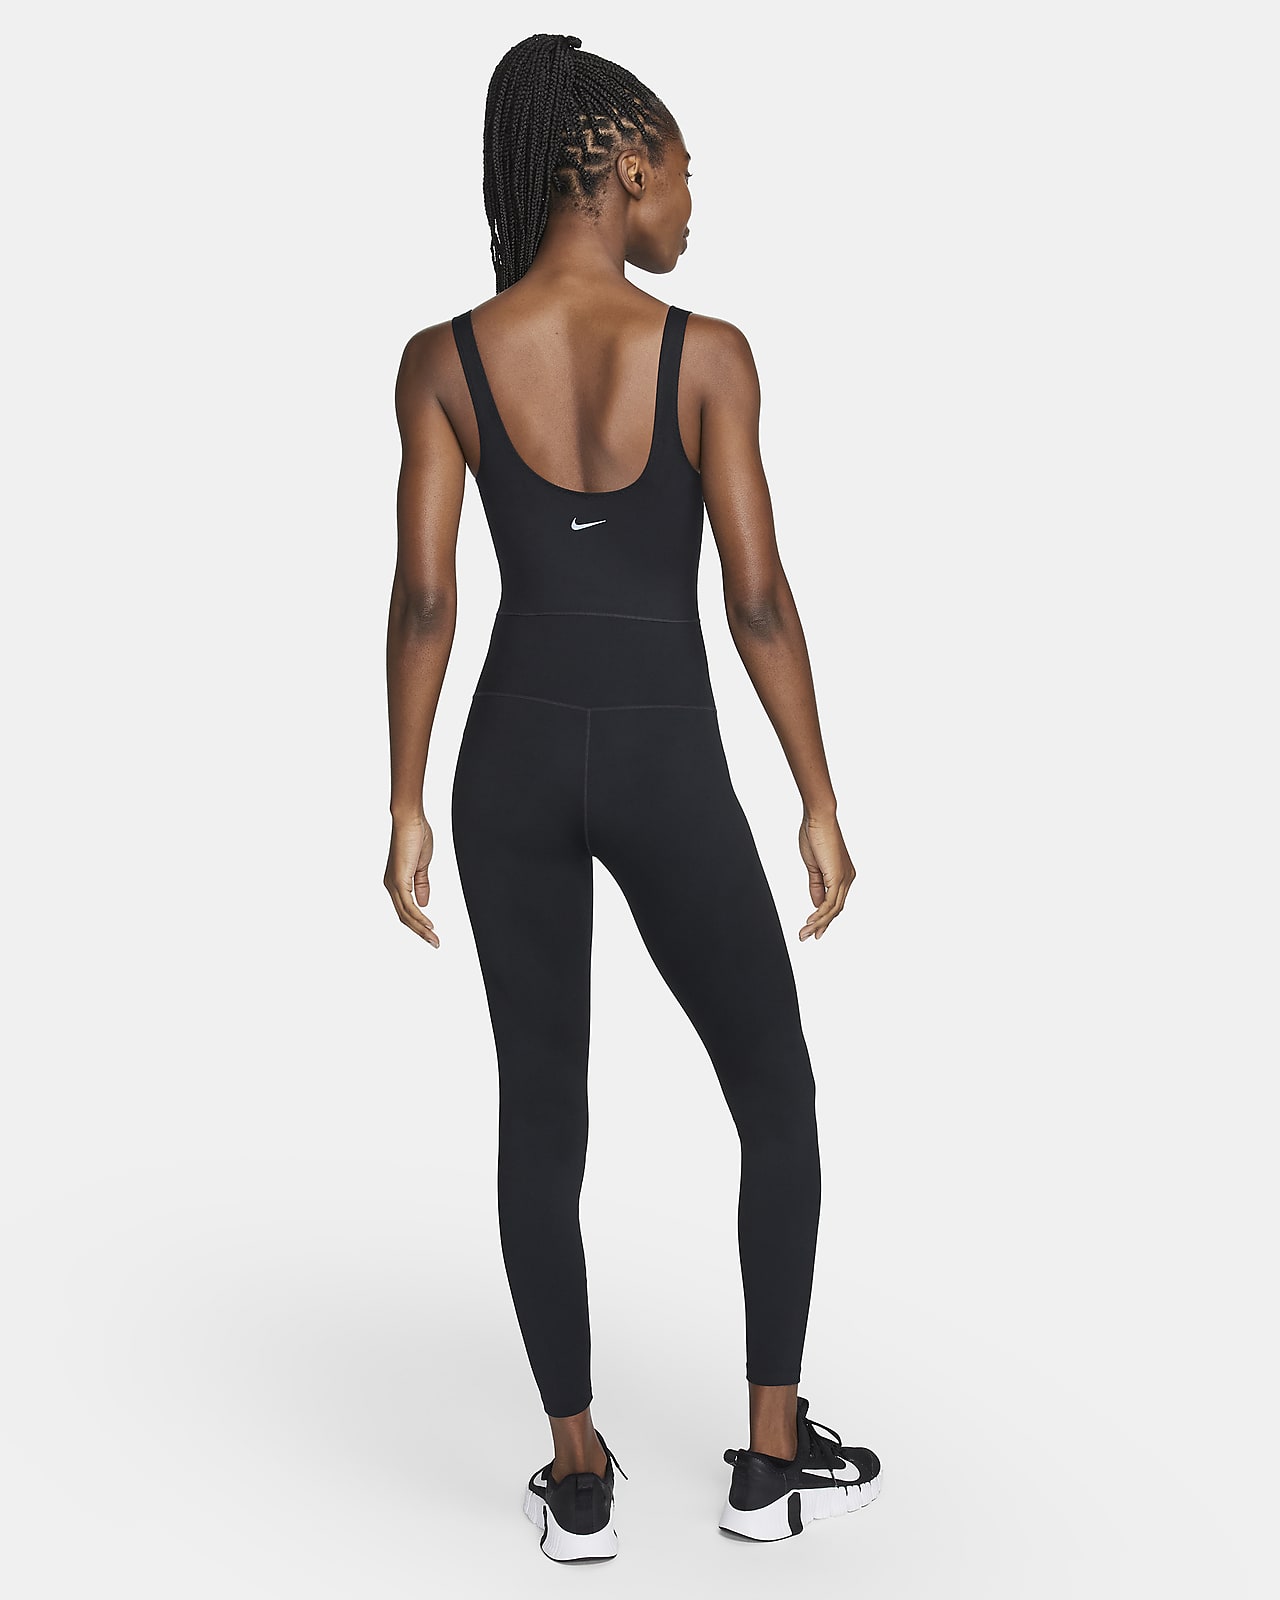  Nike Bodysuit For Women